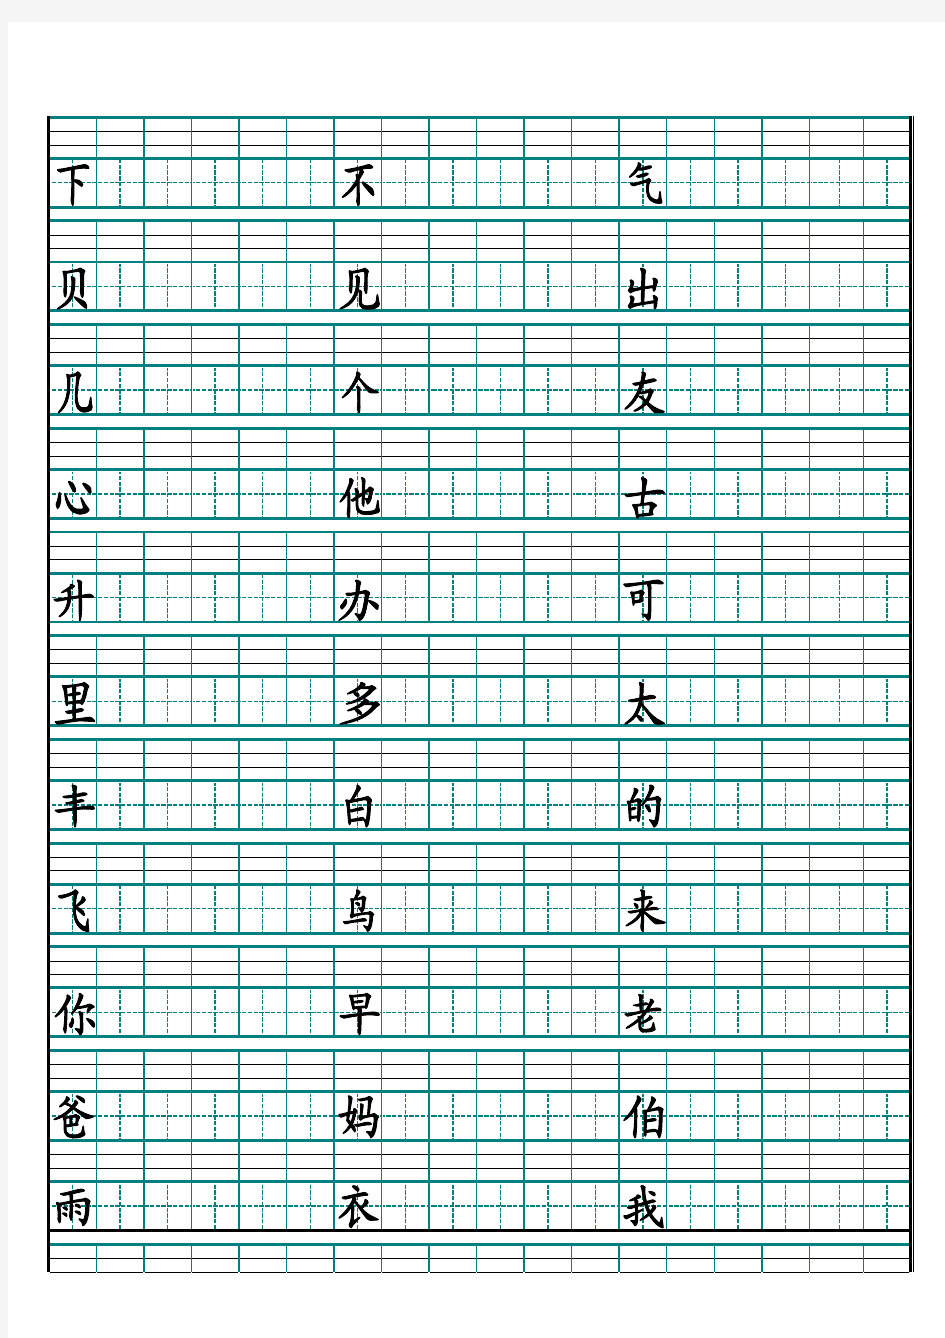 一年级上册生字拼音田字格(可随意更改_A4纸立即打印)